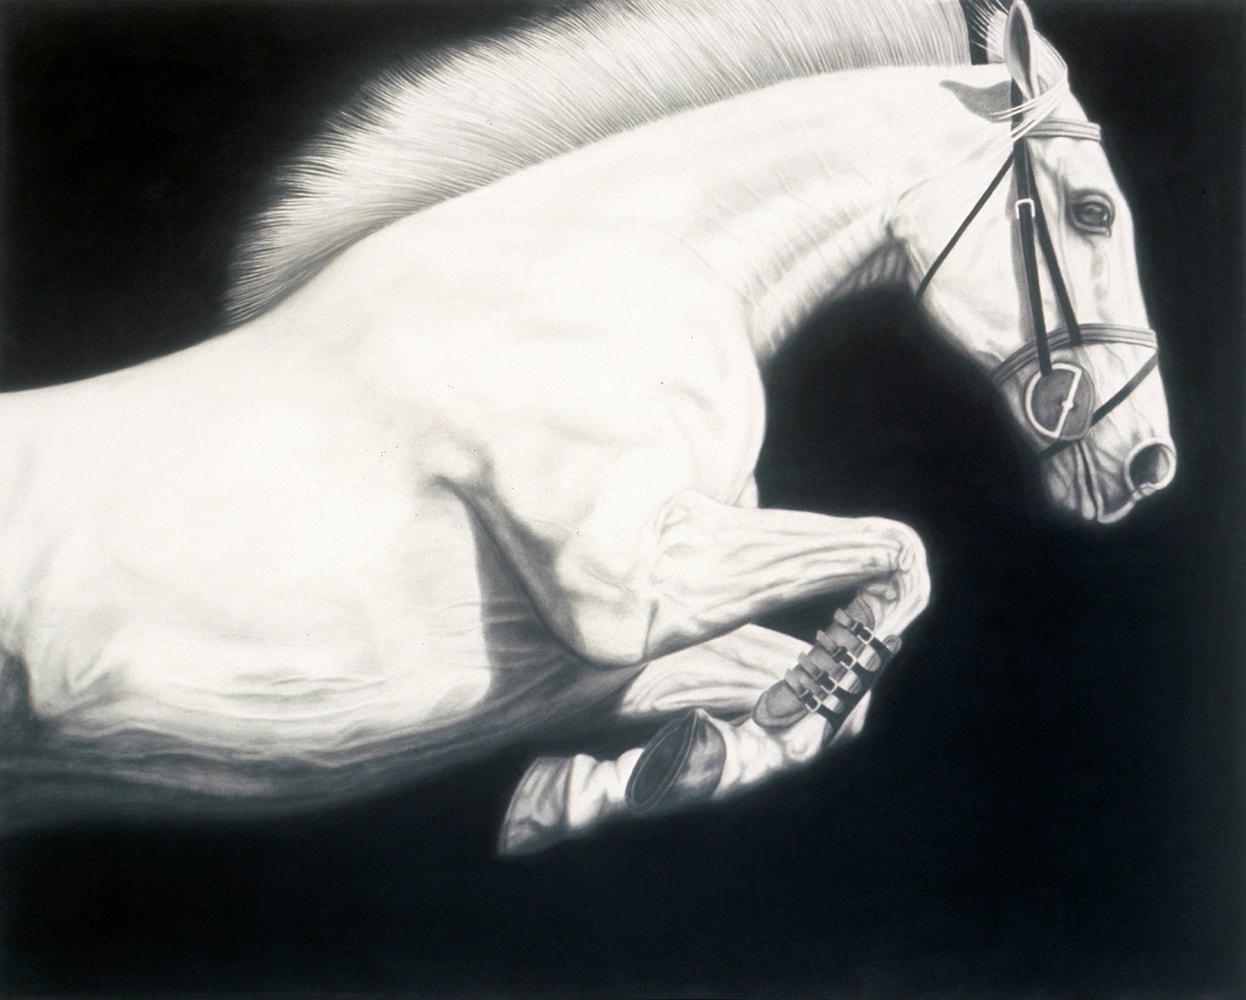 02_PICCILLO-Joseph_Horse No13_charcoal and graphite on canvas_48x60_Ws